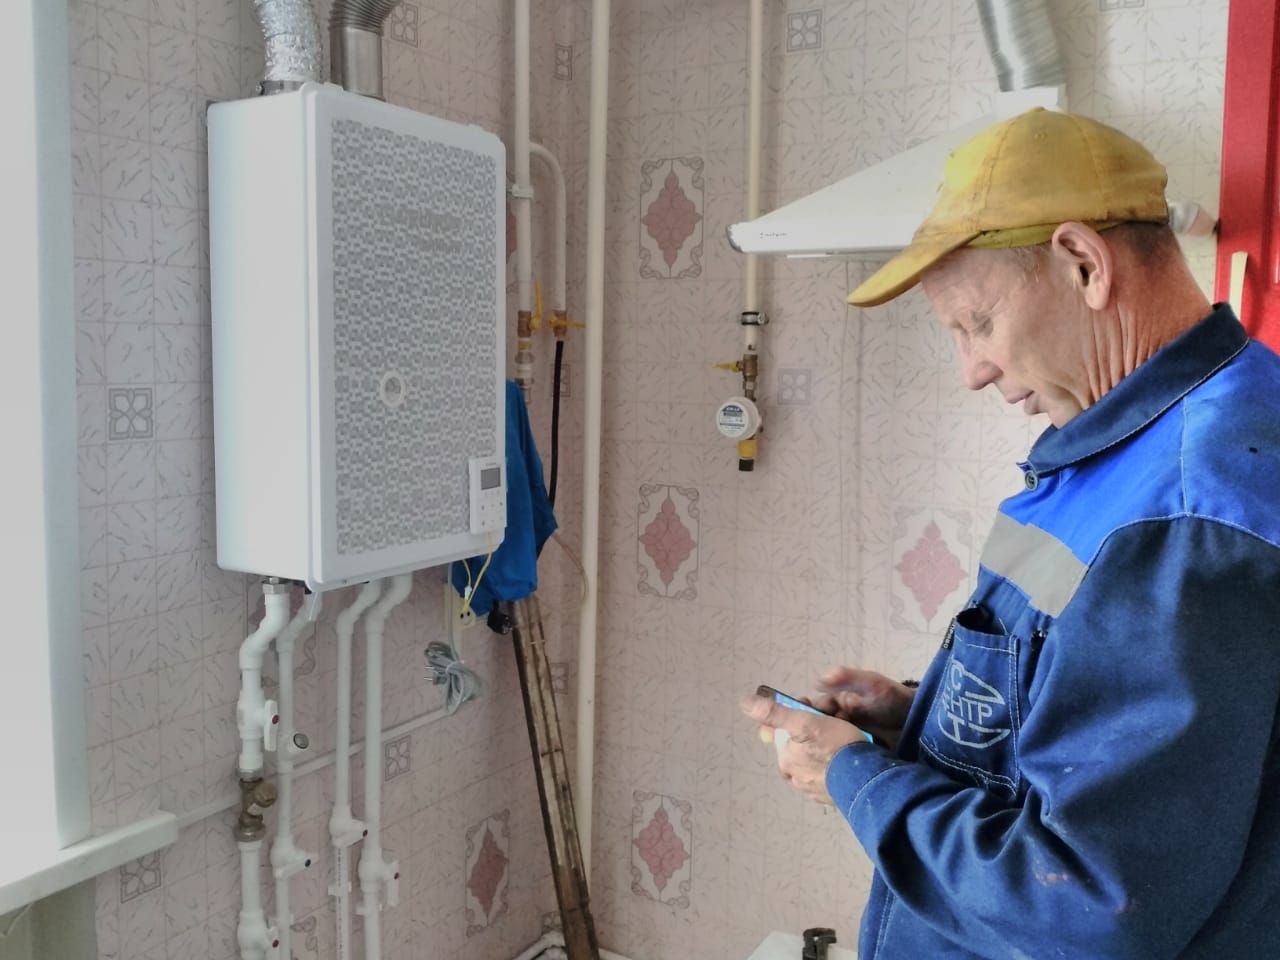 В этом году 20 многоквартирных домов в Буинске будут переведены на индивидуальное отопление. Какой объем работ уже выполнен?